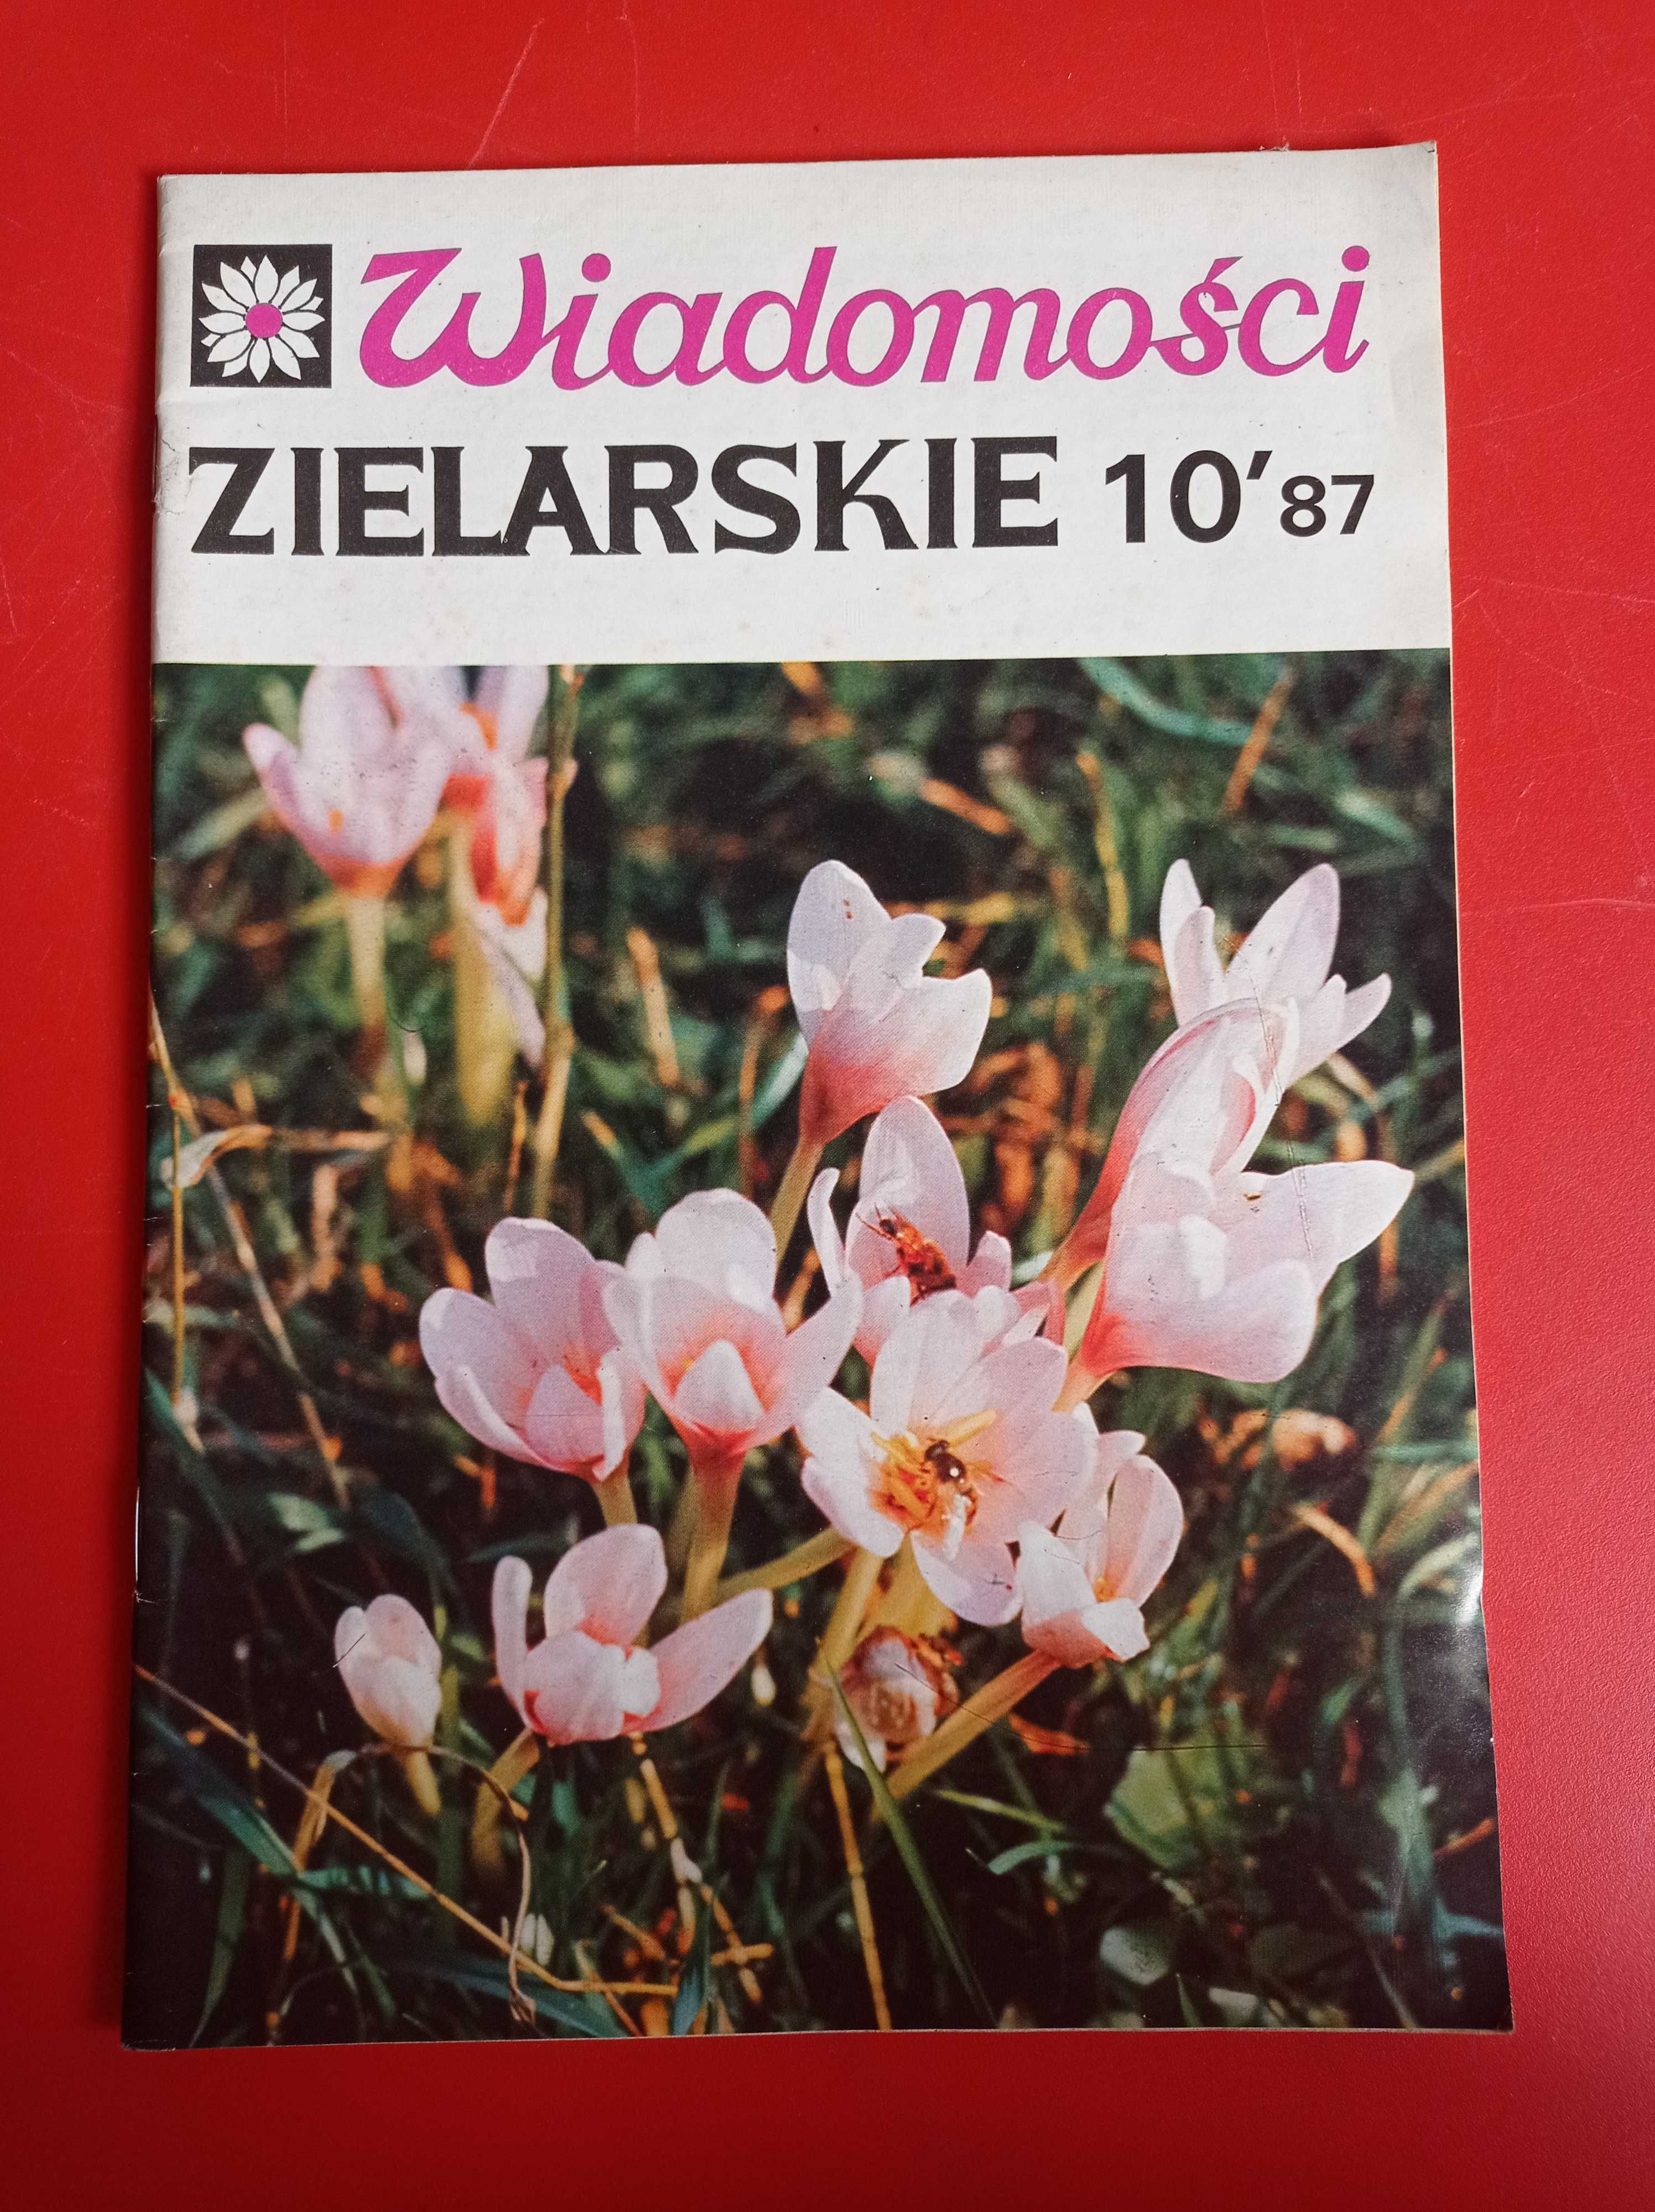 Wiadomości zielarskie nr 10/1987, październik 1987